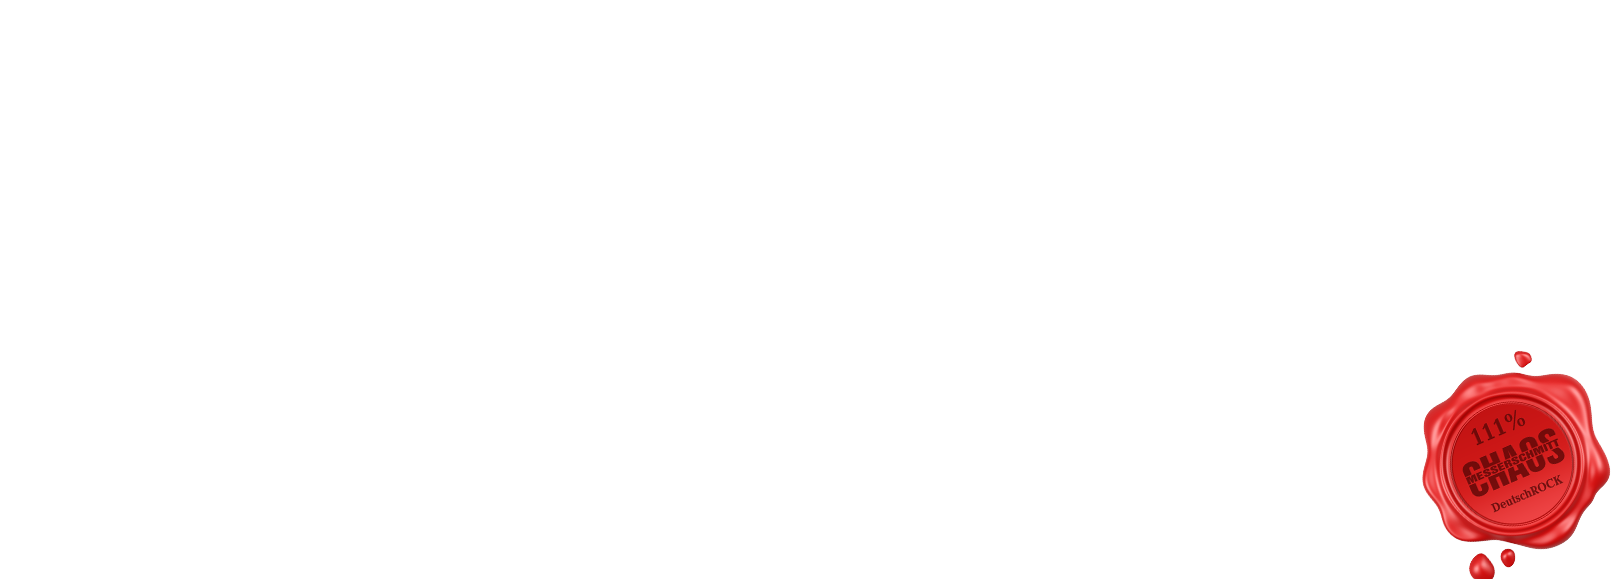 chaosmesserschmitt